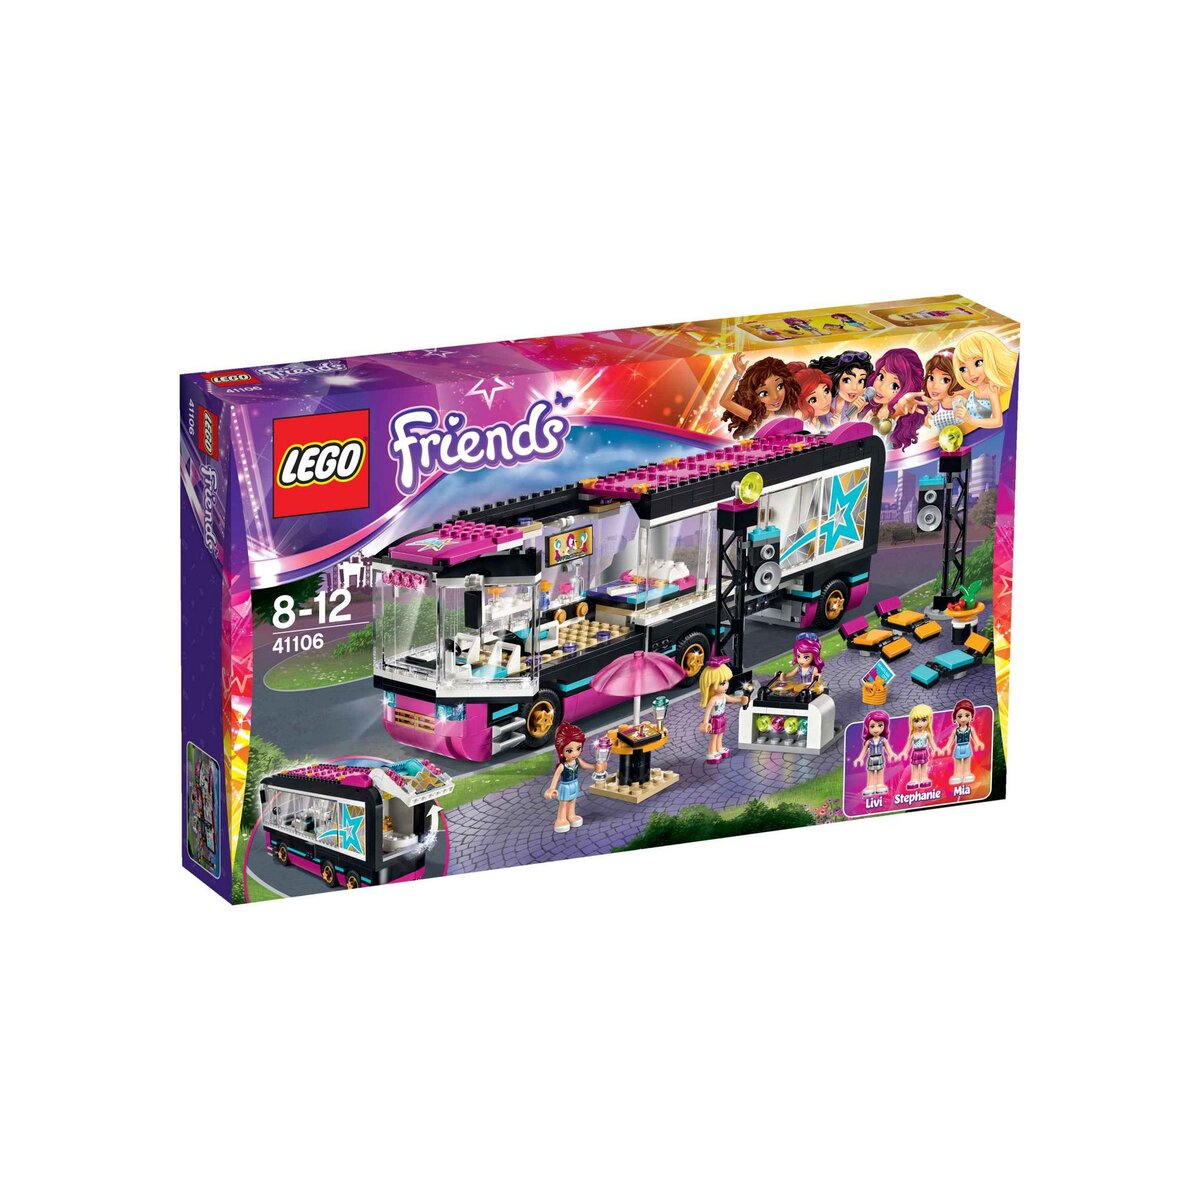 LEGO Friends 41106 - La tournée en bus